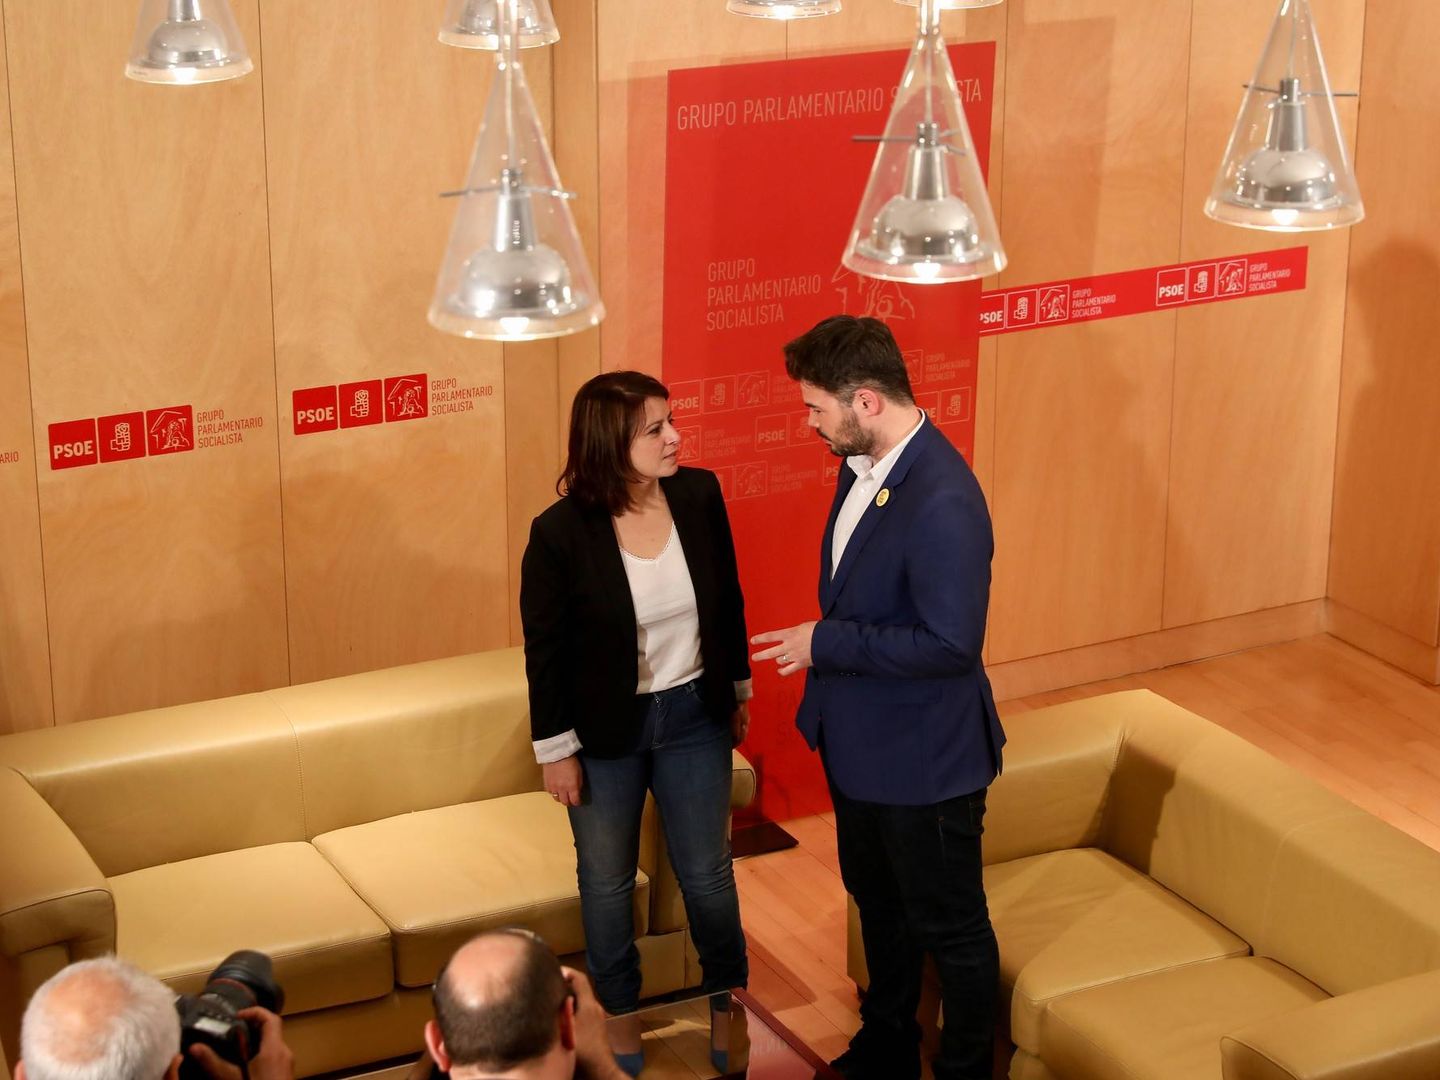 La vicesecretaria general del PSOE, Adriana Lastra, con Gabriel Rufián, portavoz de ERC, en la sala Martínez Noval del Congreso de los Diputados, el pasado 13 de junio de 2019. (Inma Mesa | PSOE)